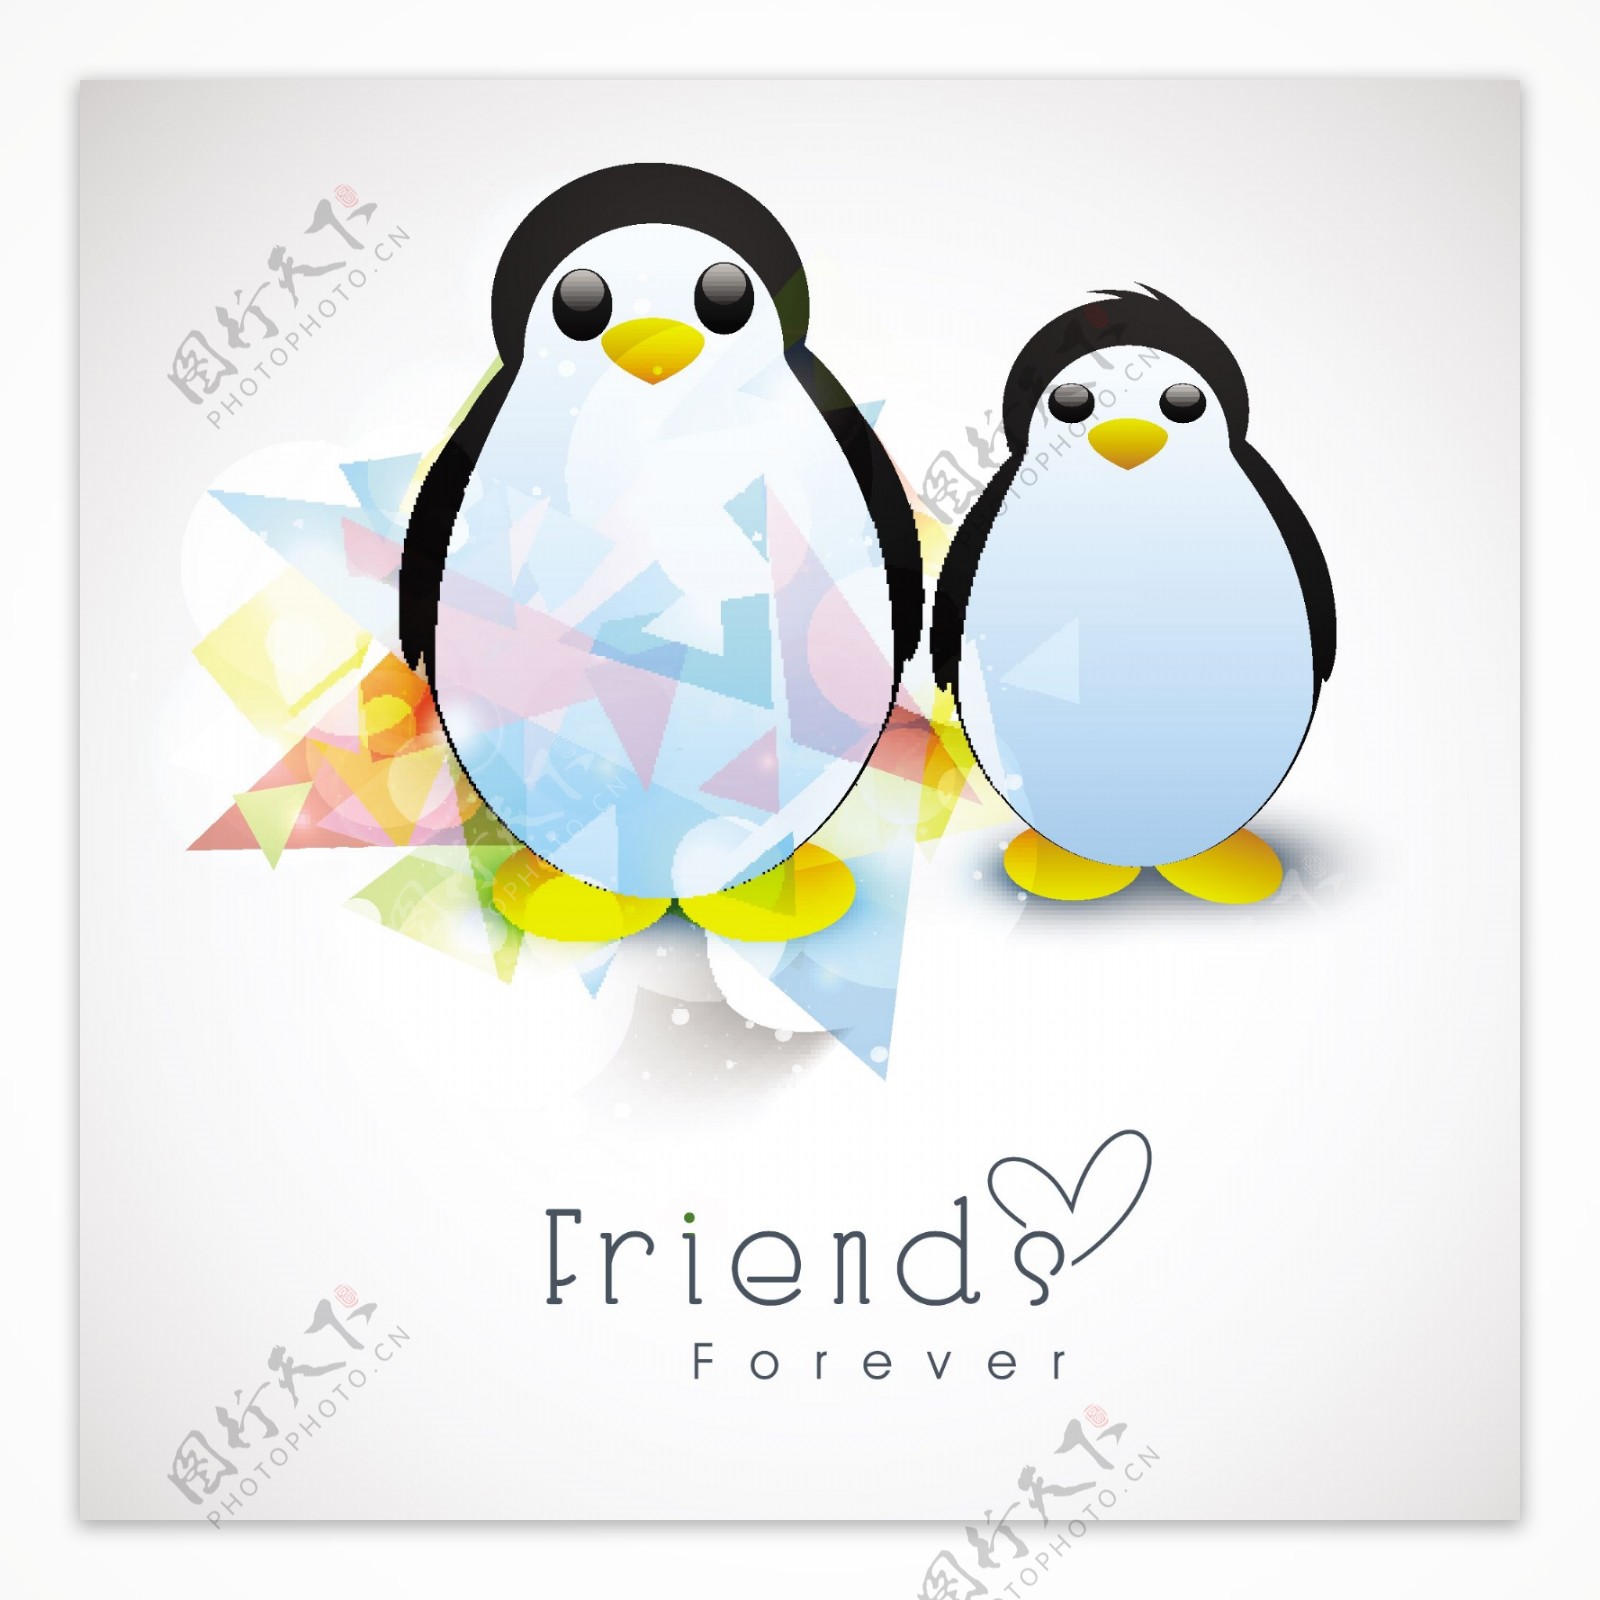 快乐友谊日背景的灰色背景的企鹅